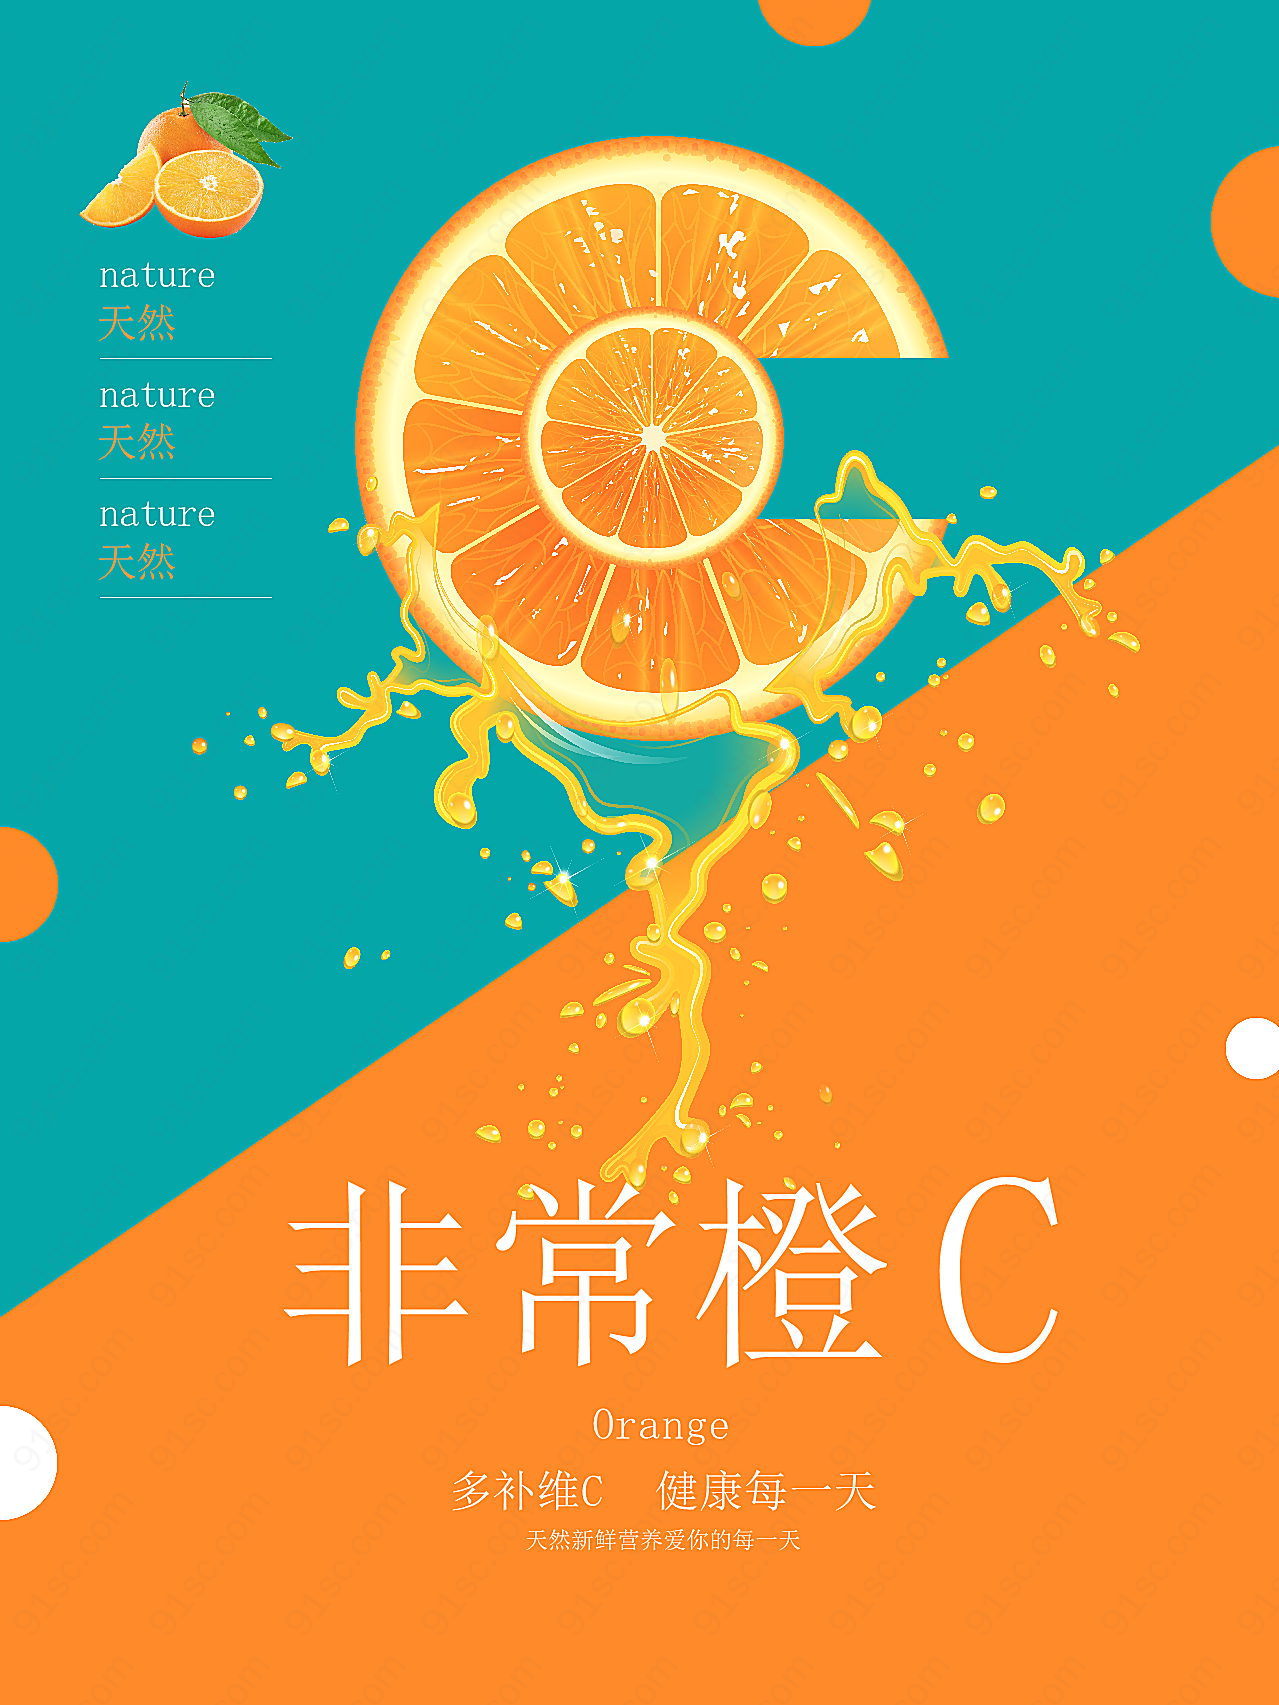 香橙水果广告海报摄影设计